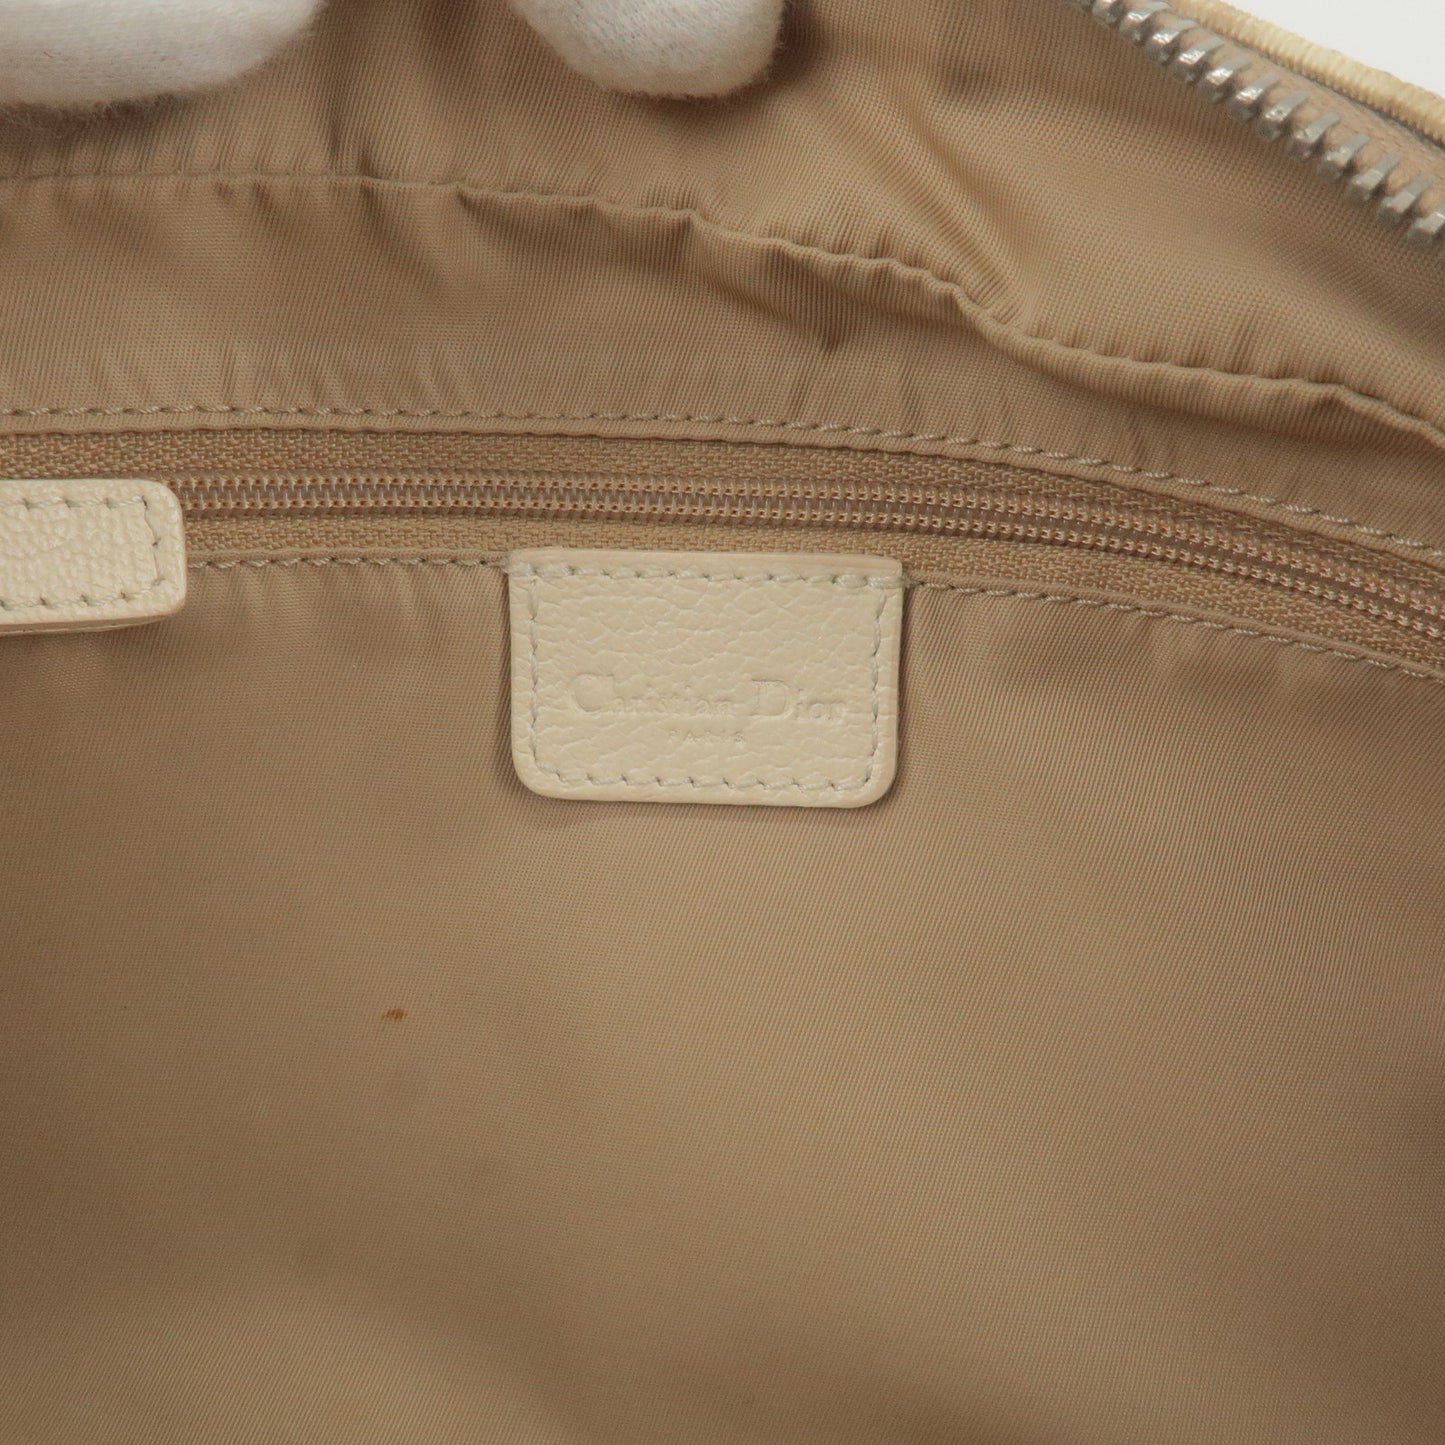 Christian Dior Trotter PVC Leather Embroidered Shoulder Bag Beige